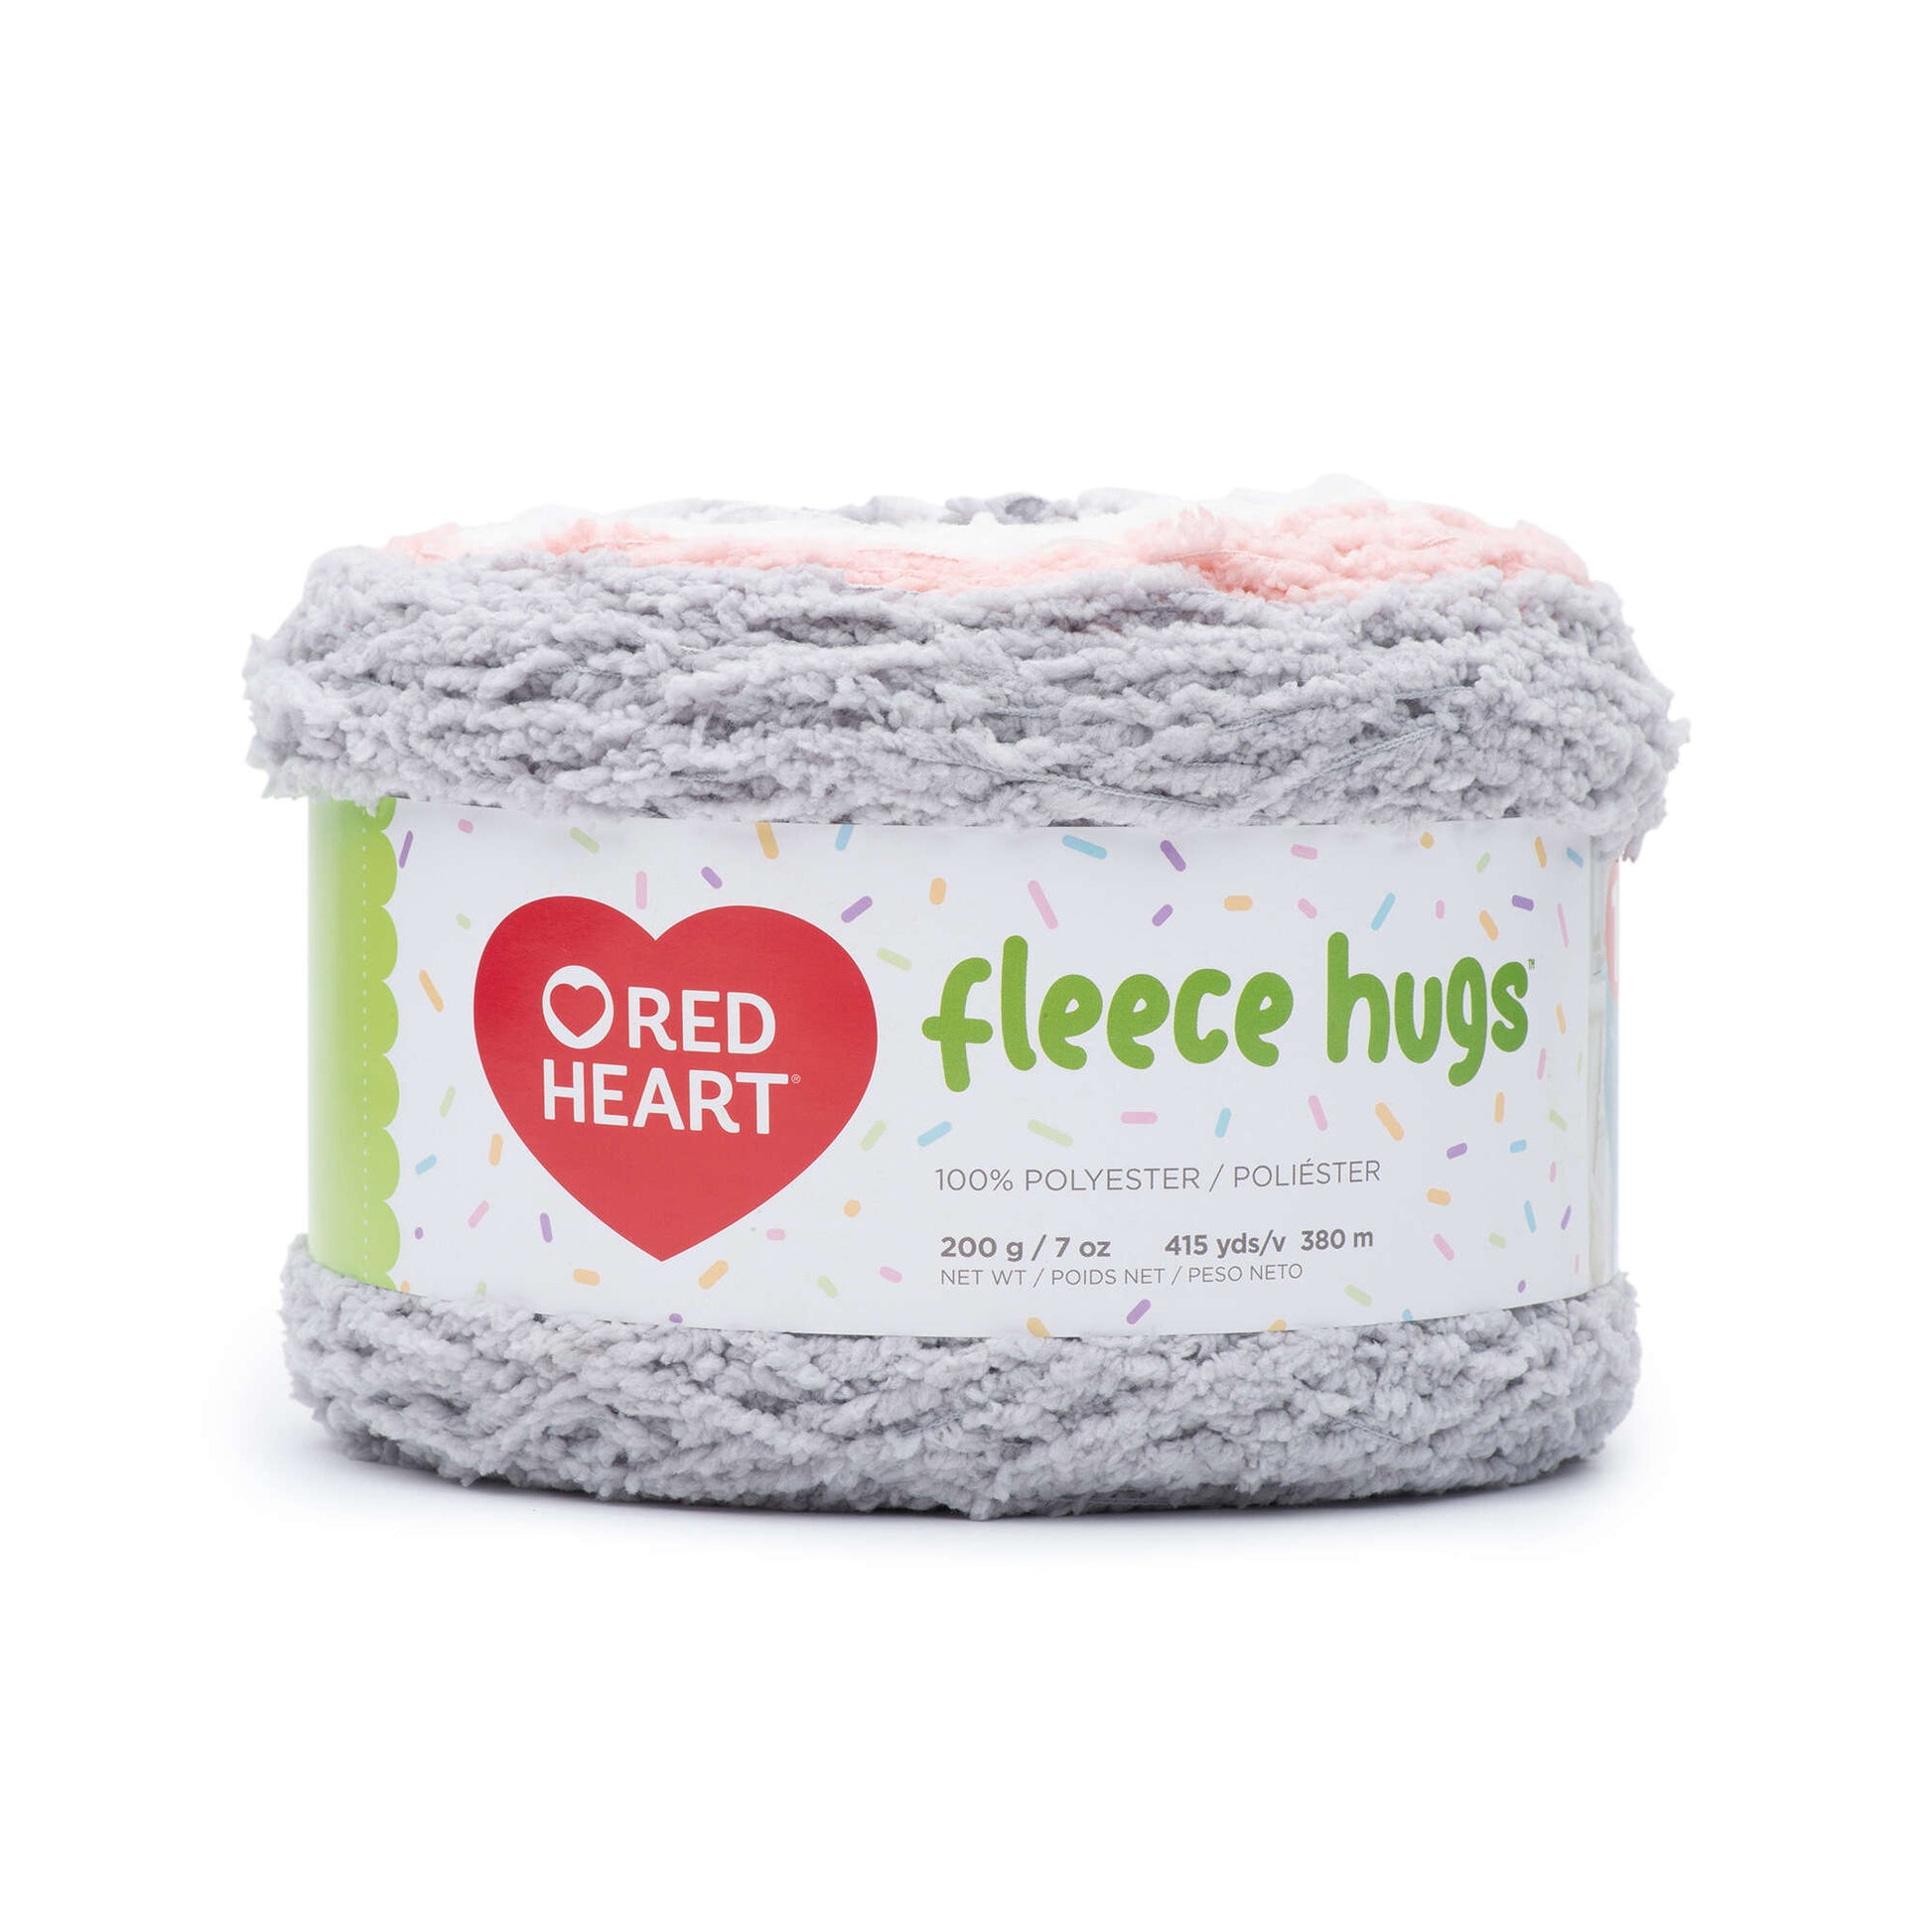 Red Heart Fleece Hugs Yarn - Clearance shades